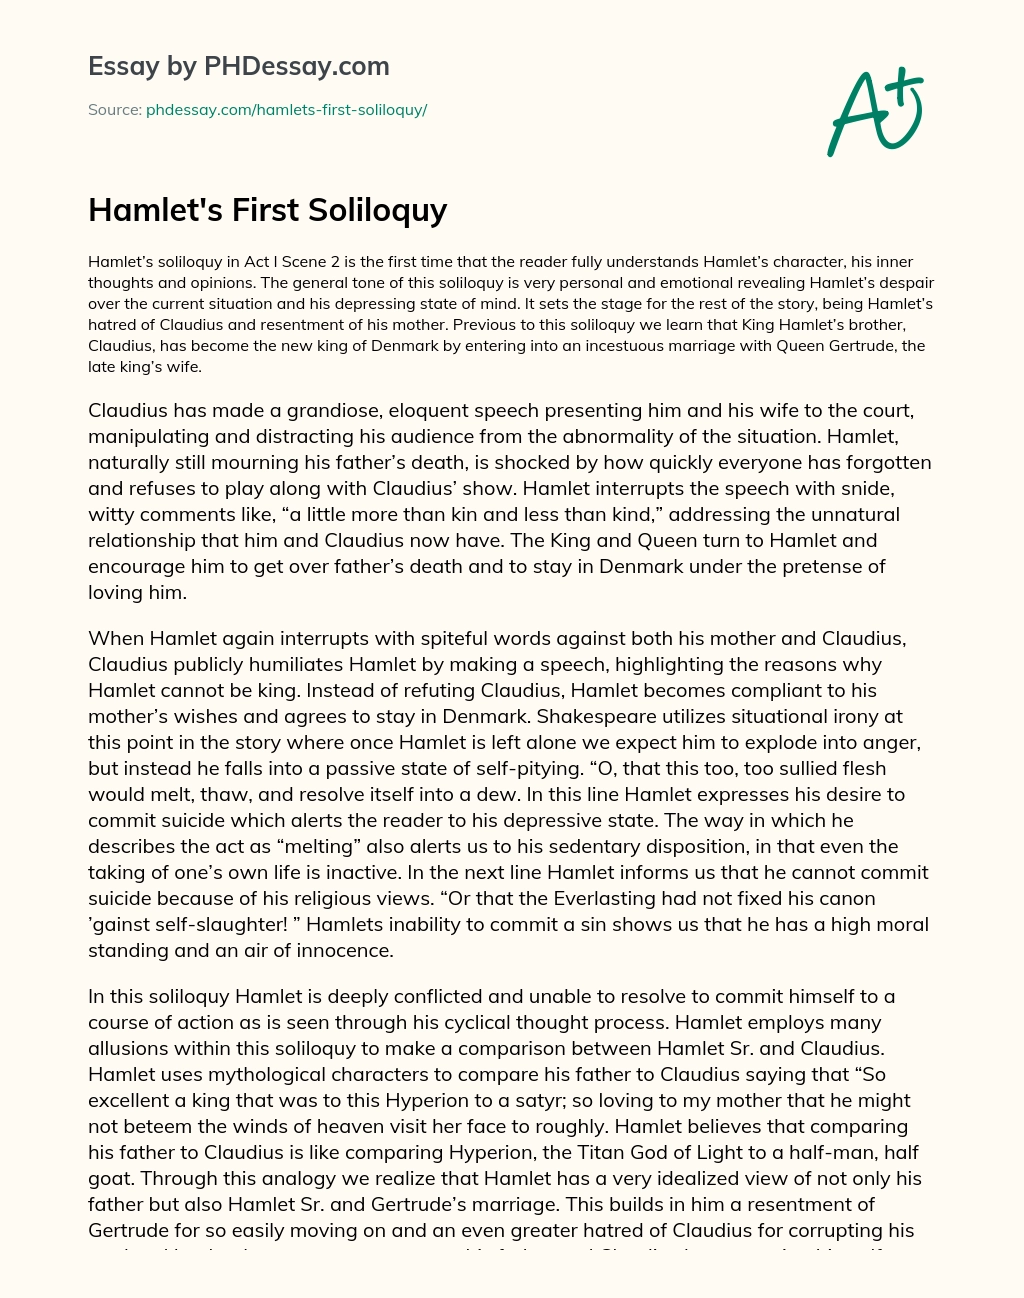 Hamlet’s First Soliloquy essay